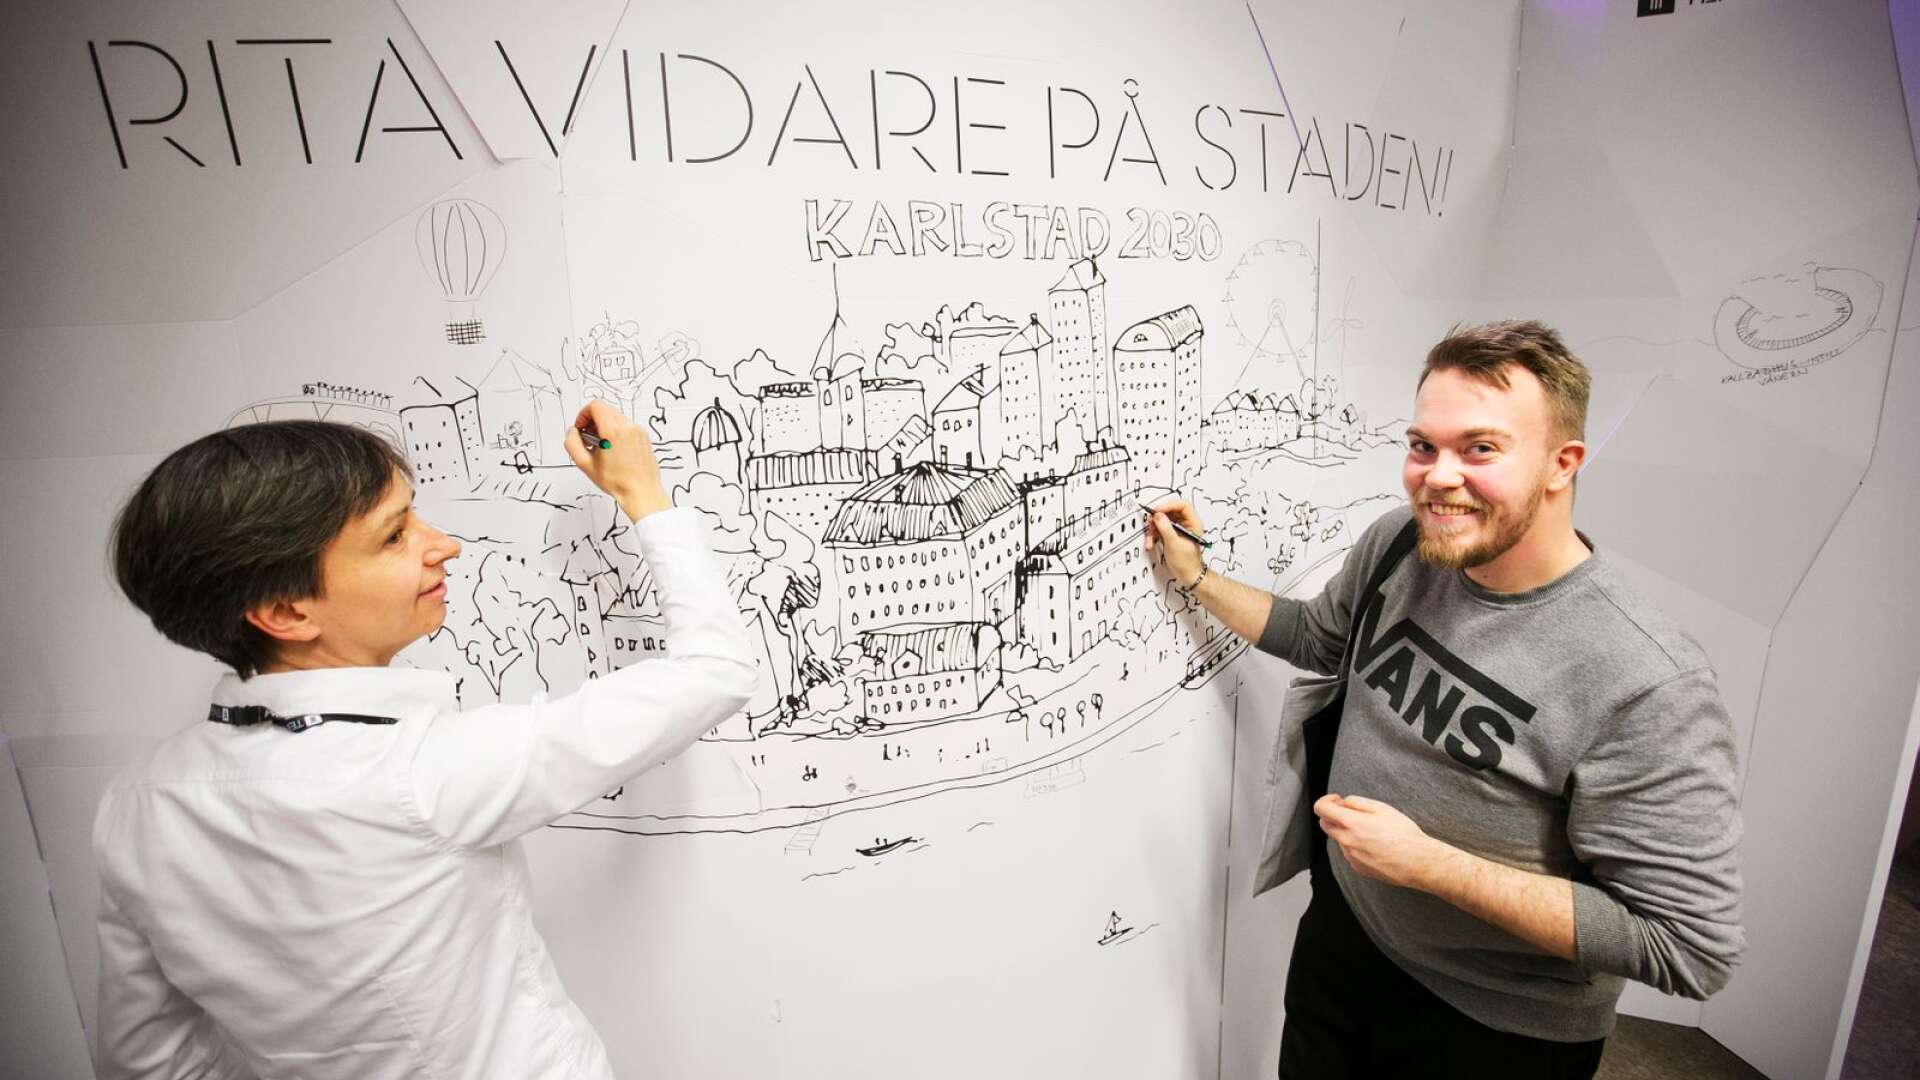 Arkitekten Astrid Prinzler och hennes kollegor bjöd in studenter att fylla på Karlstads stadsbild. Här Karl Hagelin Björk som ritar dit solpaneler på taken.